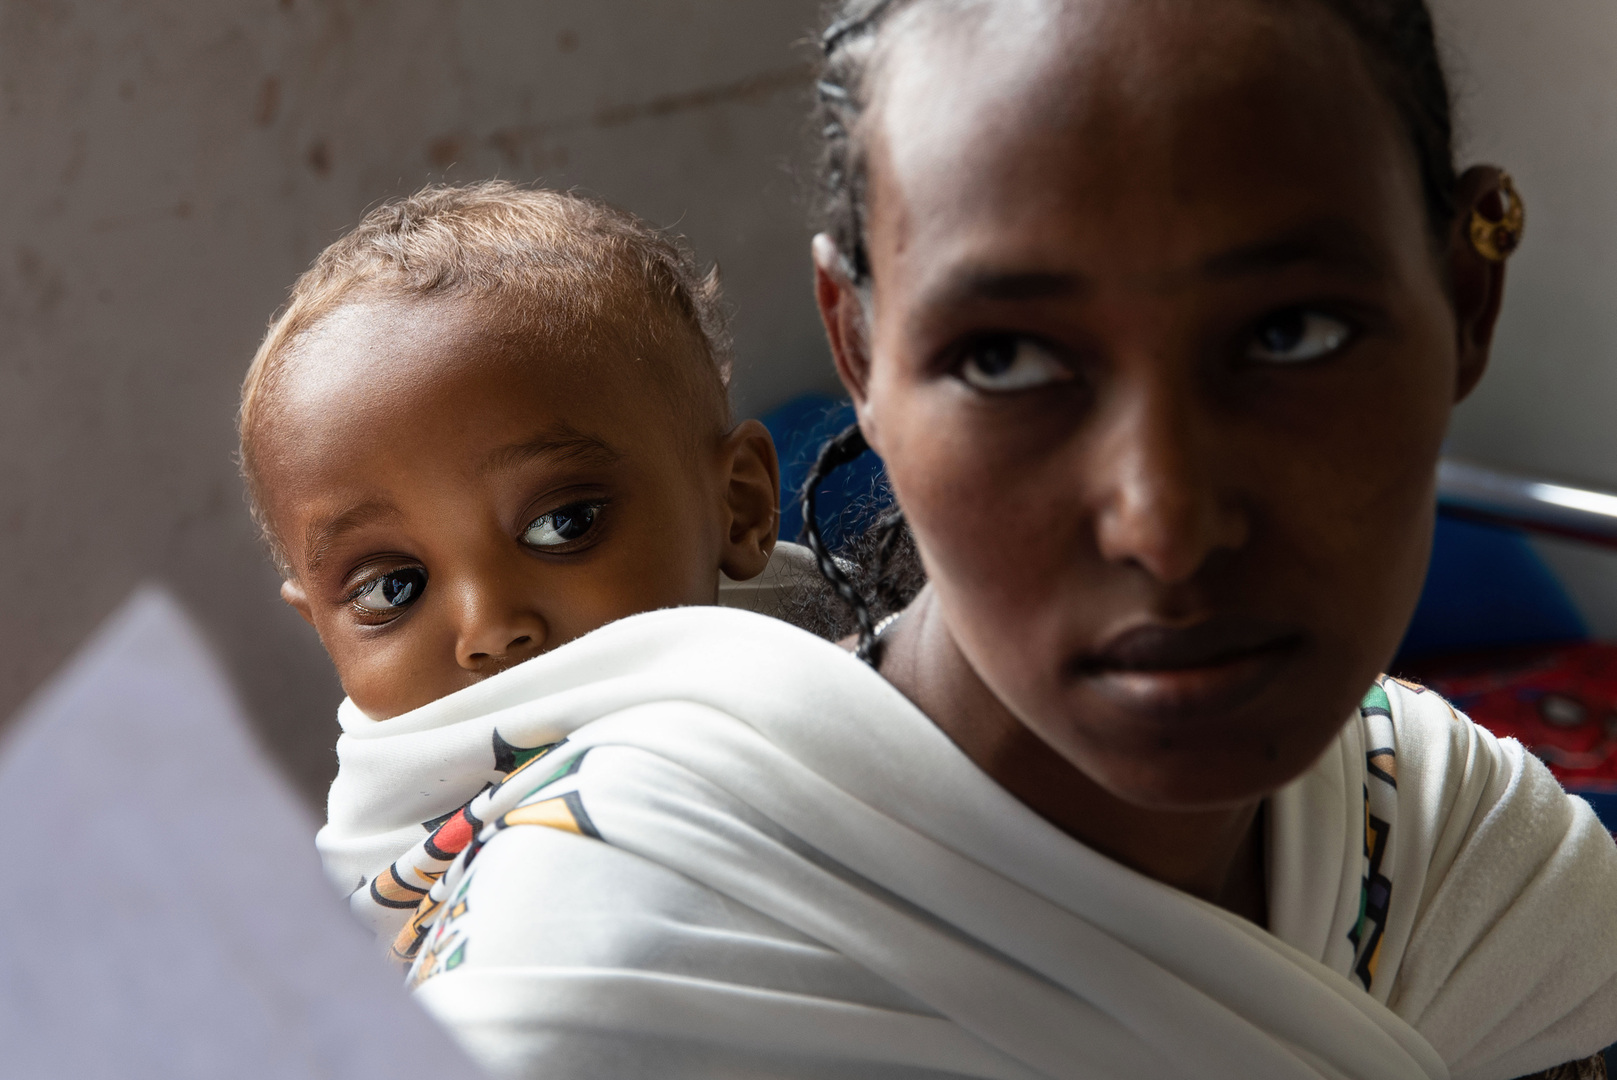 أم مع طفلها الذي يعاني من سوء التغذية - إقليم تيغراي في شمال إثيوبيا